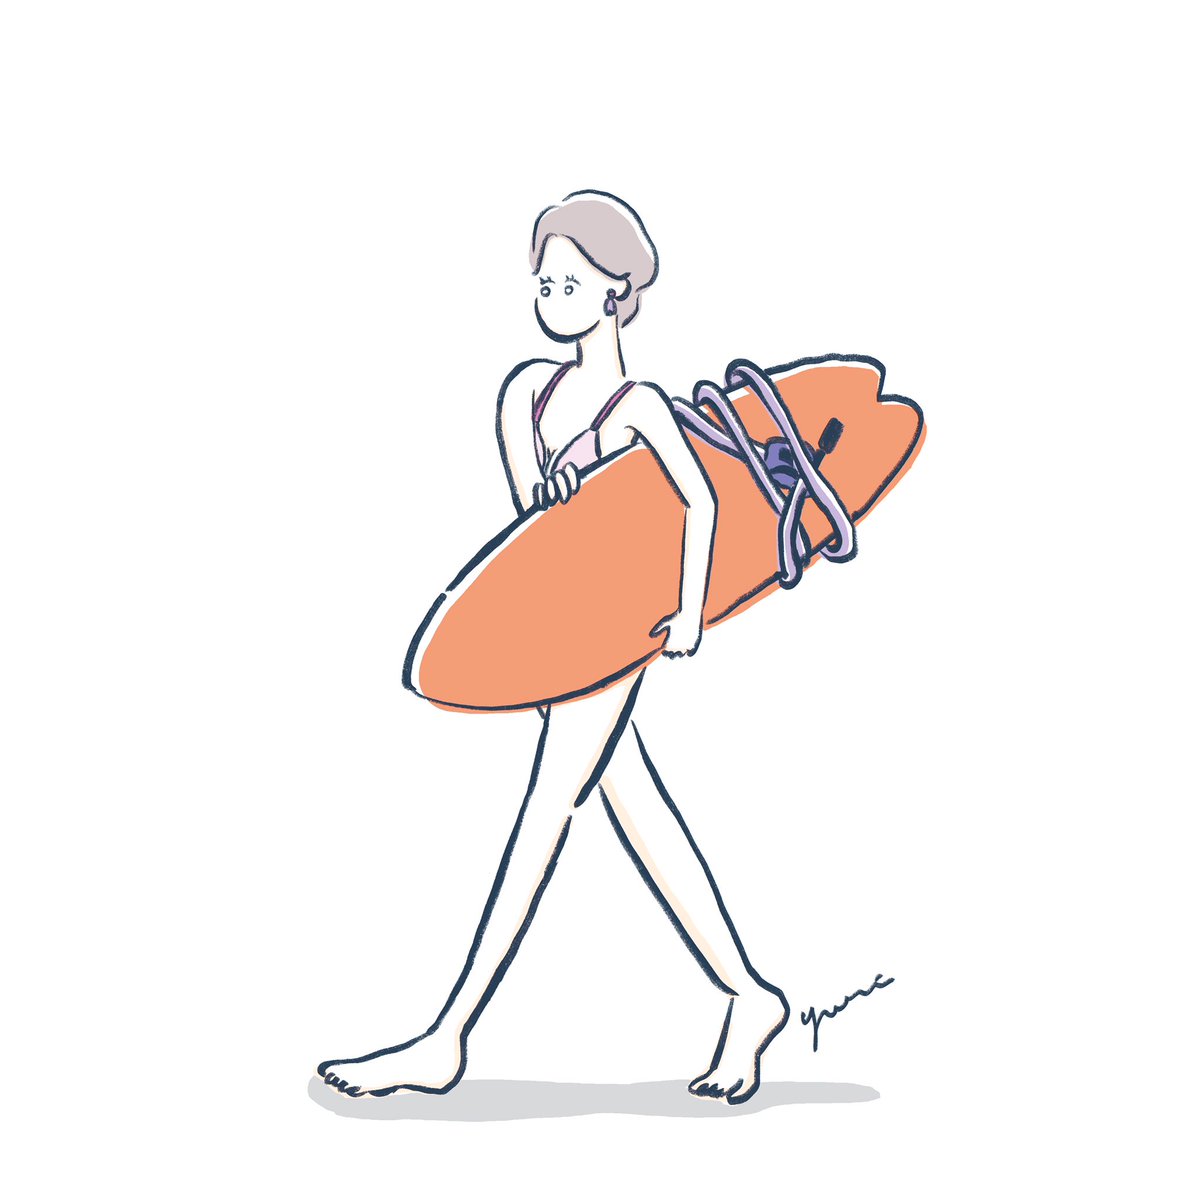 まつもとゆり Twitterissa サーフボードは大きくて重くて 運ぶのもひと苦労 ボードを持って歩く女の子をいろいろ描いたので少しずつ載せていきます その4 Adobefresco Girlsillustration ガールズイラスト イラスト サーフガール サーフィン女子